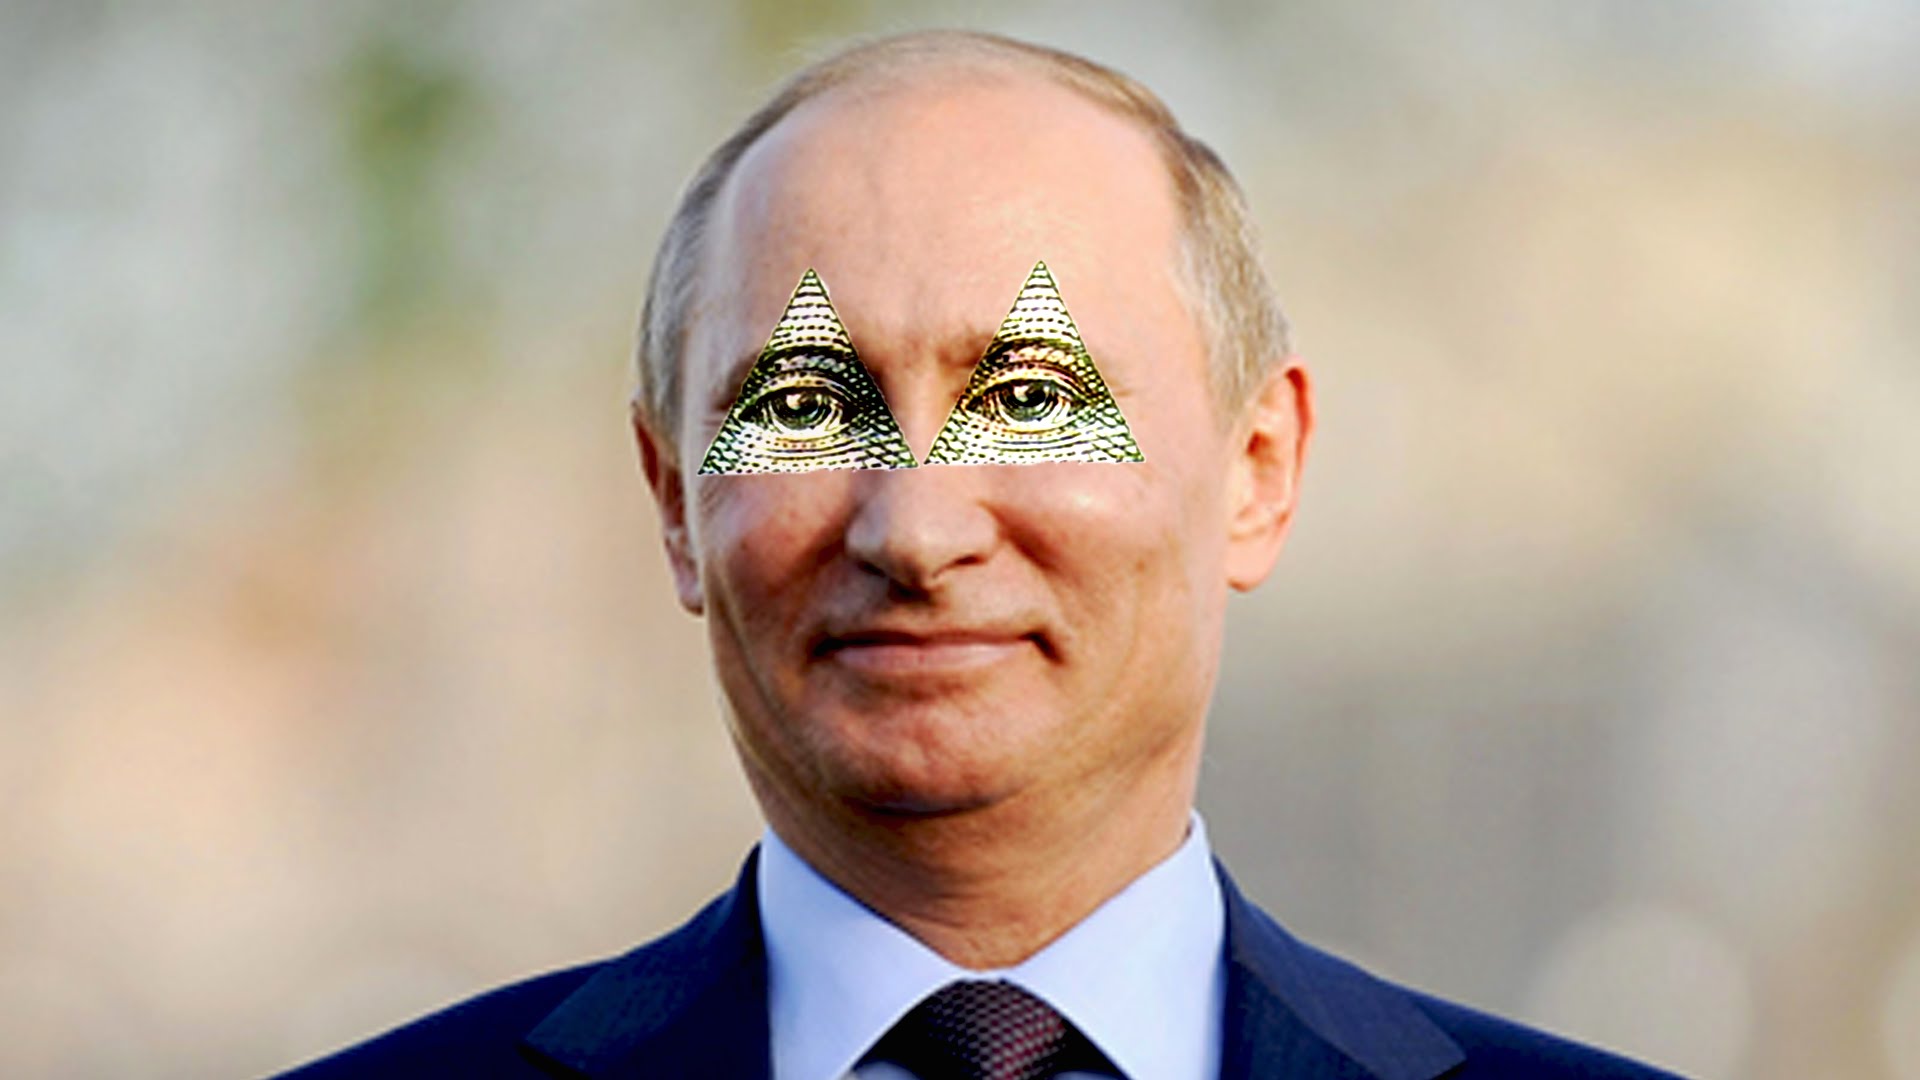 Putin is Illuminati